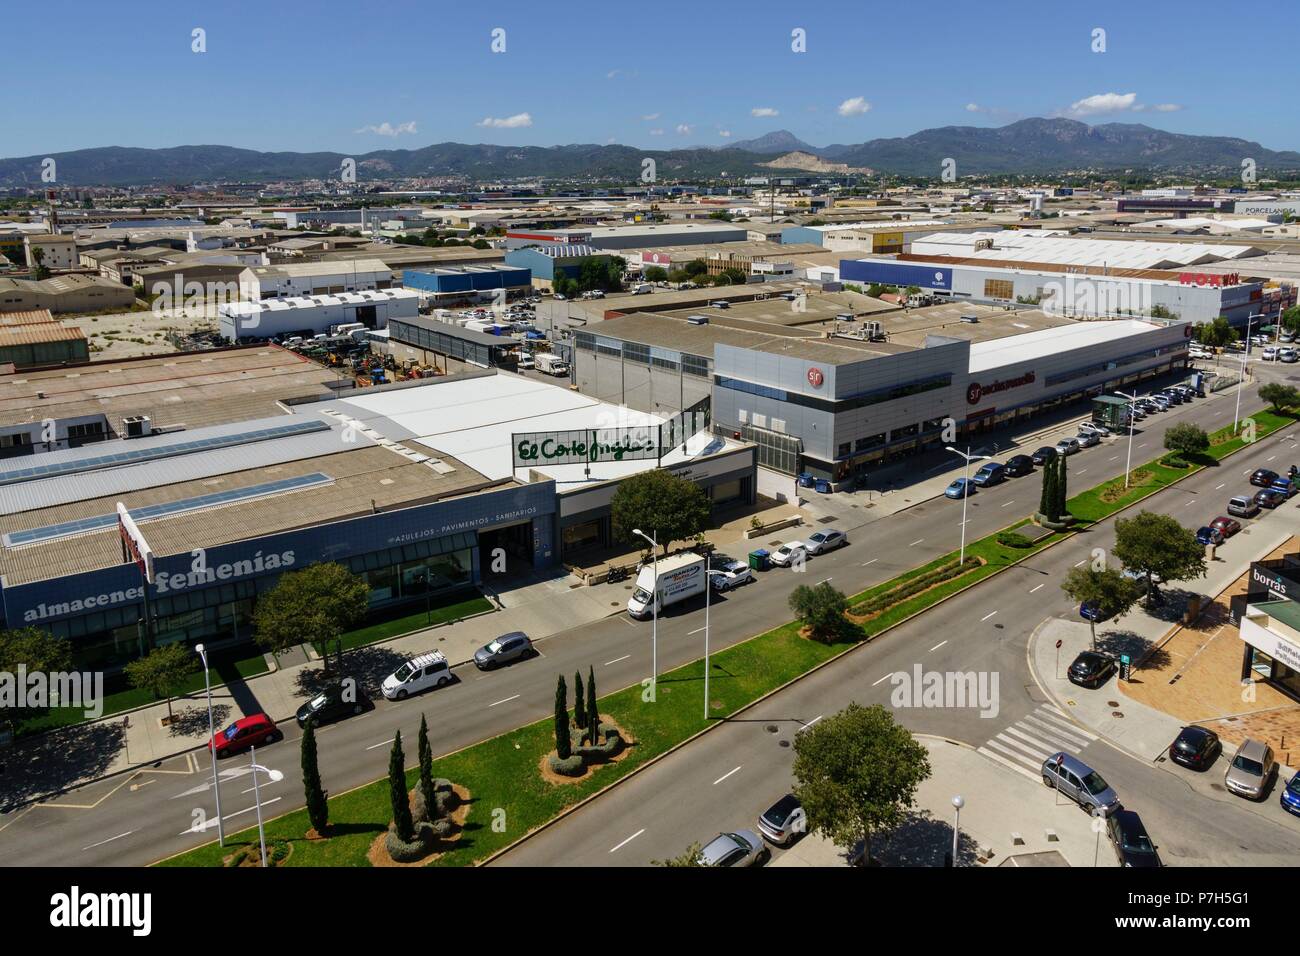 poligono industrial de Son Castello, Palma, Mallorca, balearic islands, spain, europe. Stock Photo